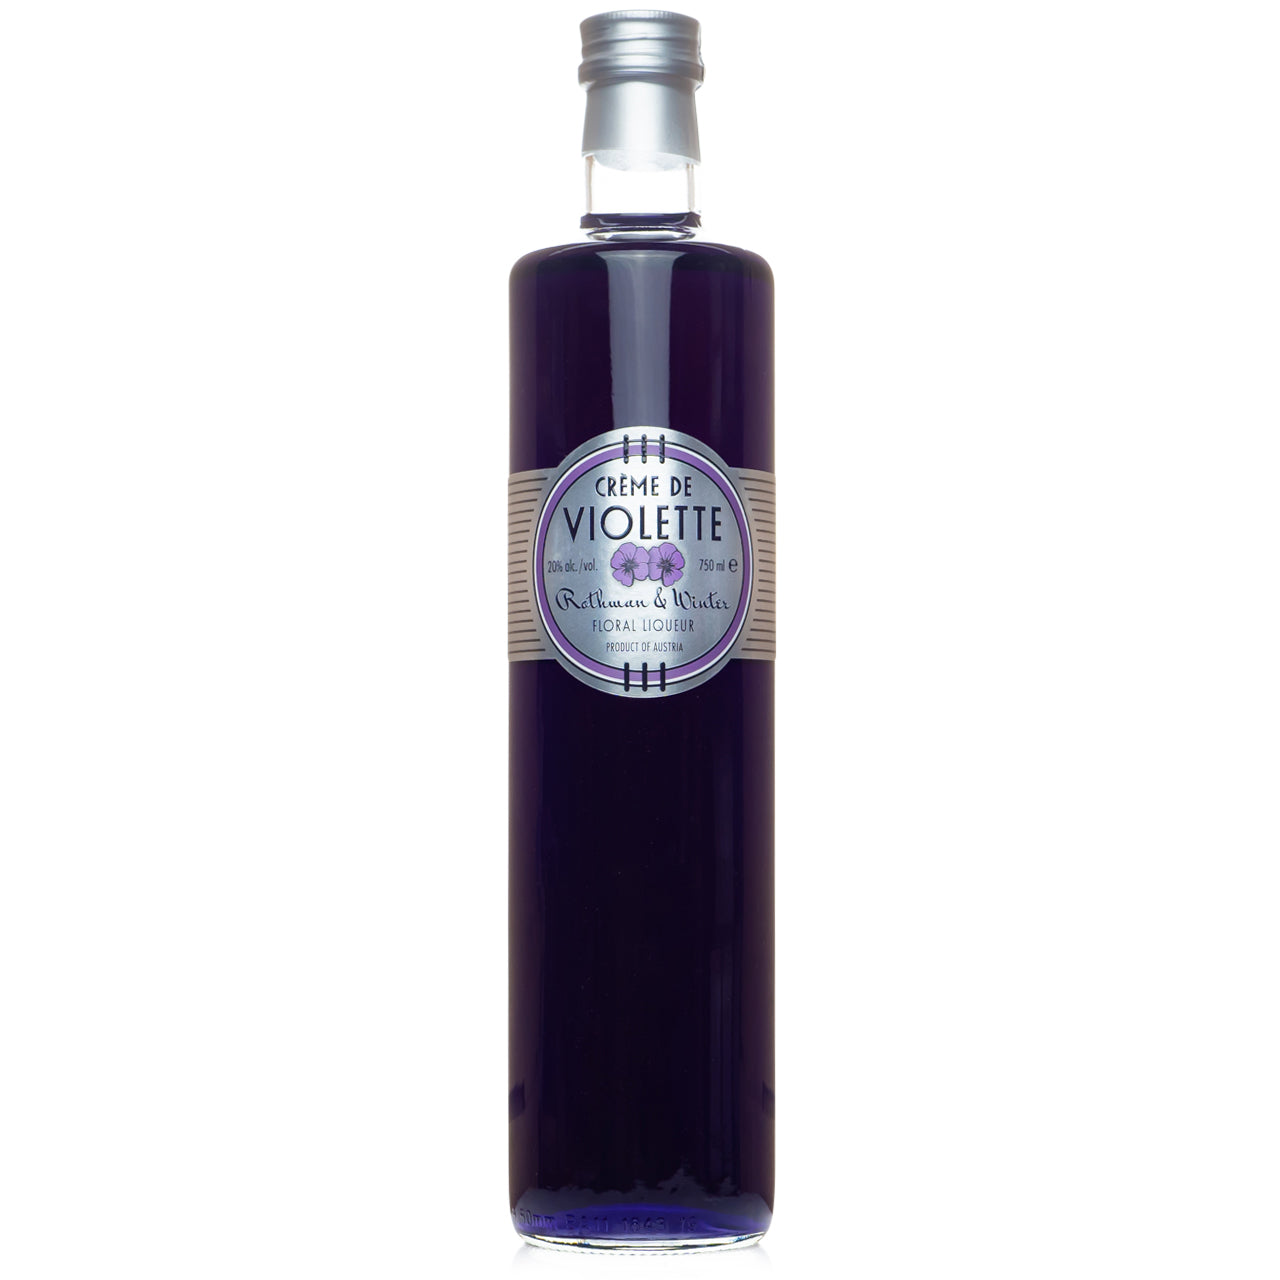 Rothman & Winter Creme de Violet Liqueur